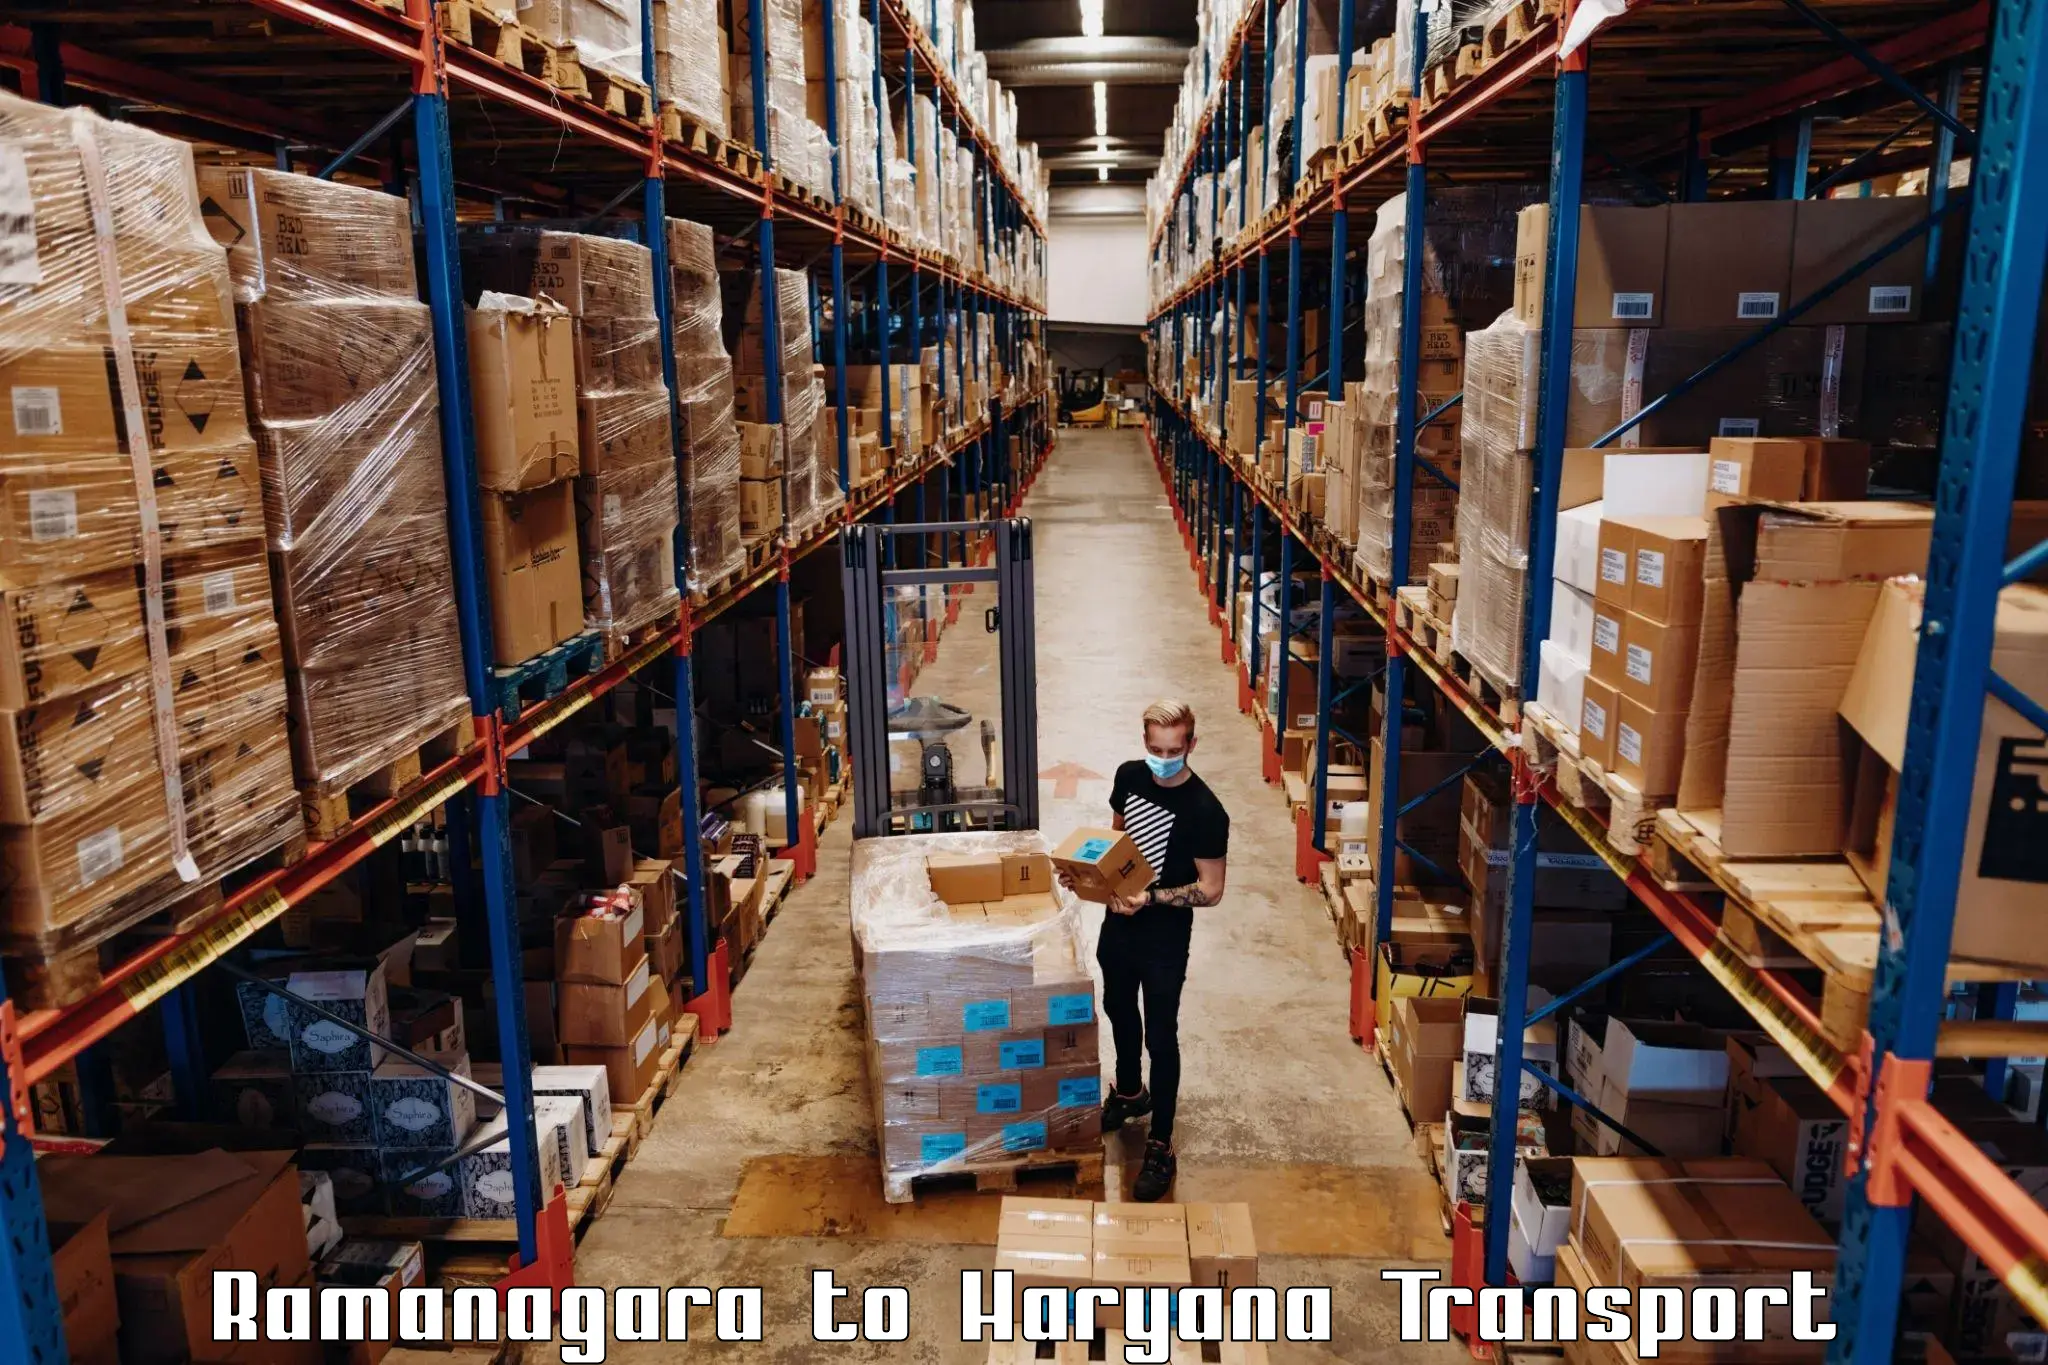 Cargo transportation services Ramanagara to Safidon